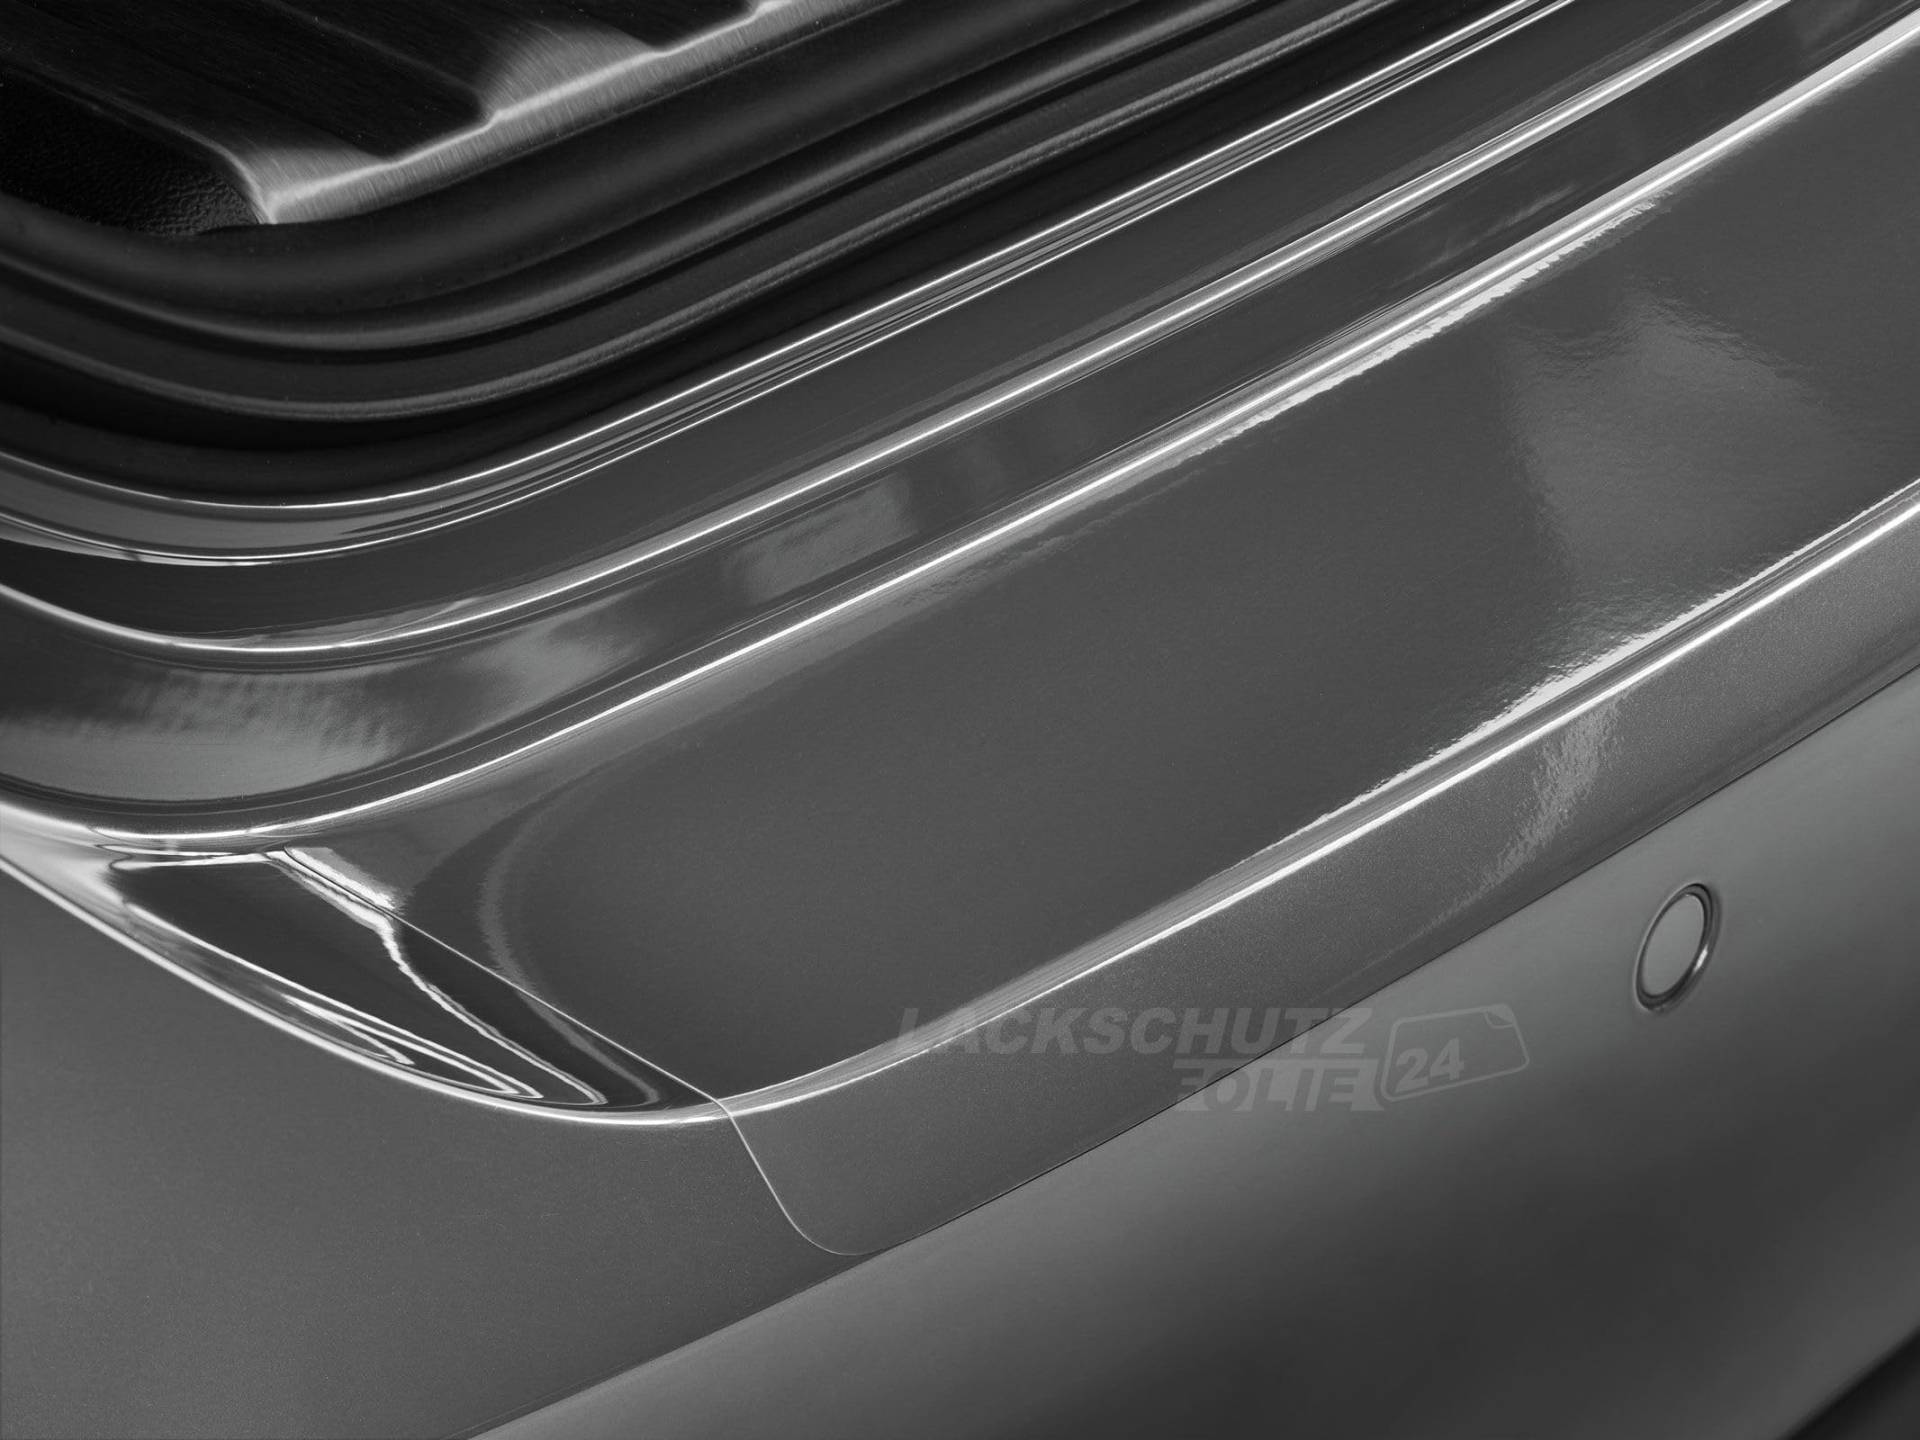 LSF24 - Ladekantenschutzfolie - Transparent Glatt Hochglänzend für Mercedes-Benz A-Klasse Typ V177, Limousine, ab BJ 05/2018 von Lackschutzfolie24